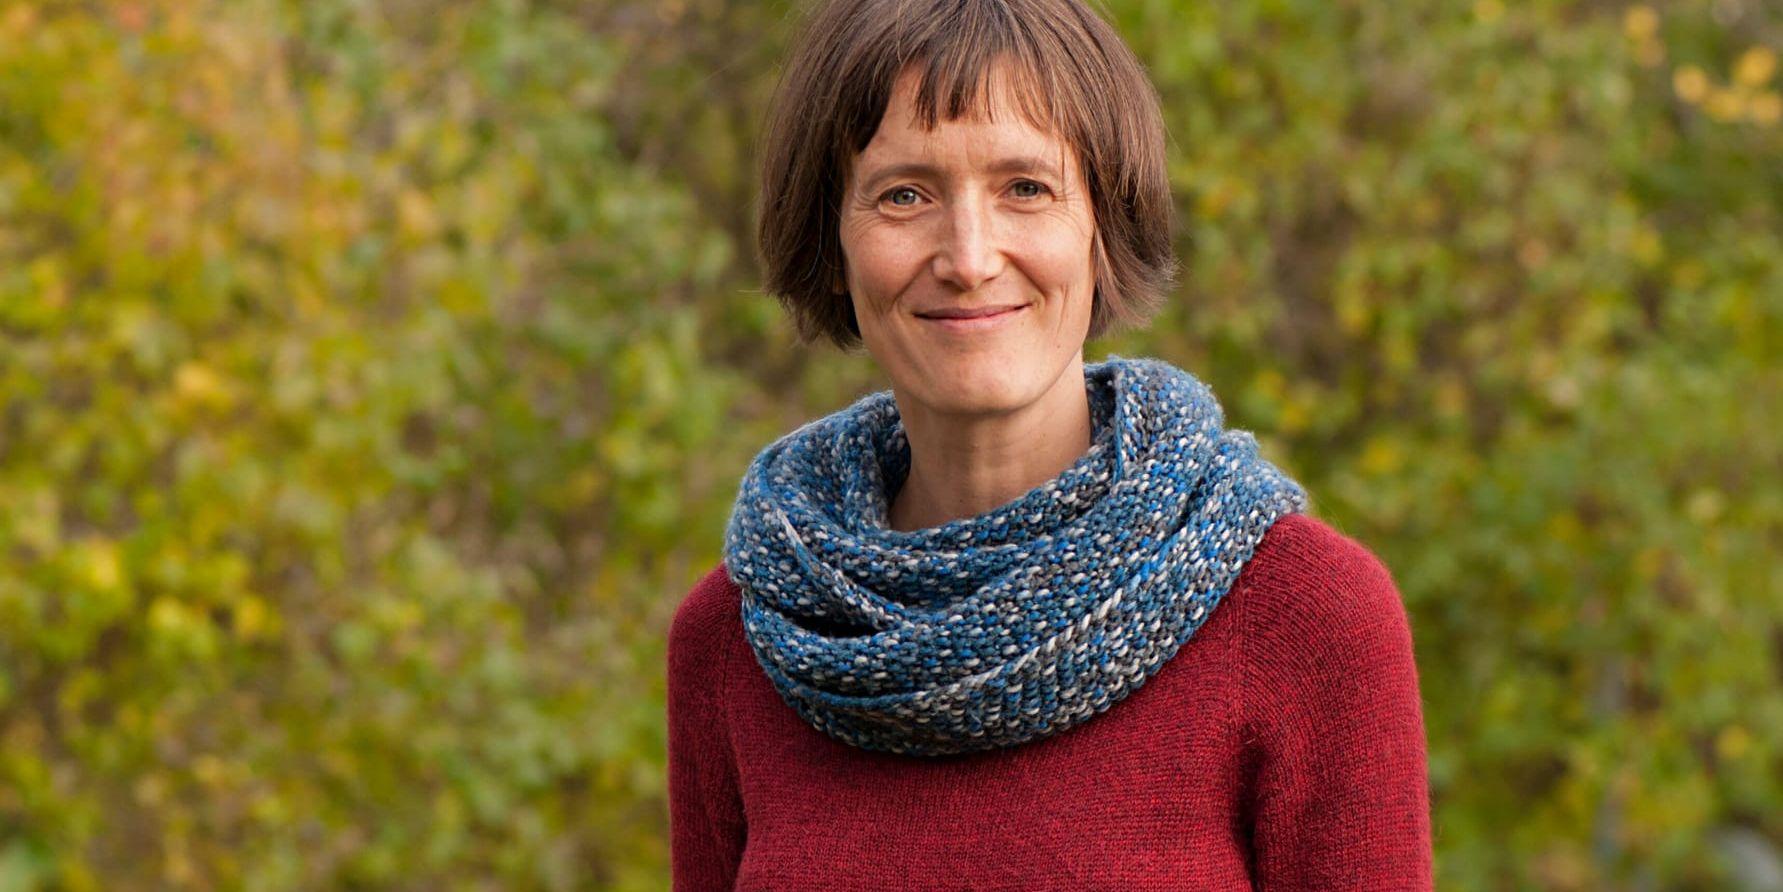 Svenska universitet borde ta tydligare ställning för en mer kraftfull klimatpolitik, anser Jeannette Eggers, forskare vid Sveriges Lantbruksuniversitet (SLU) i Umeå.